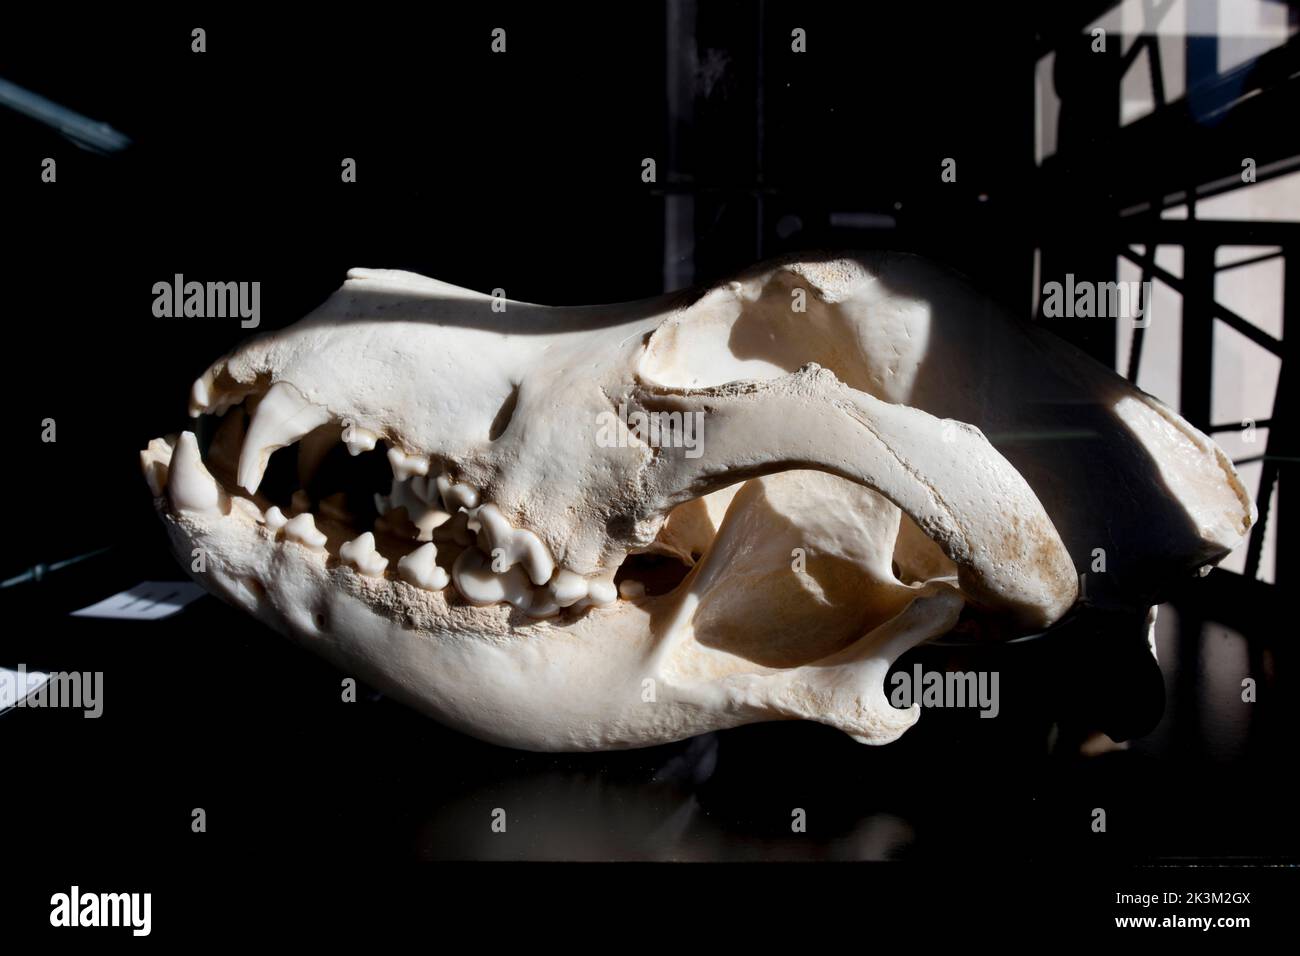 La Garganta, España - Nov 21th, 2020: Gran perro de Dane cranium, raza grande de perro originaria de Alemania Foto de stock